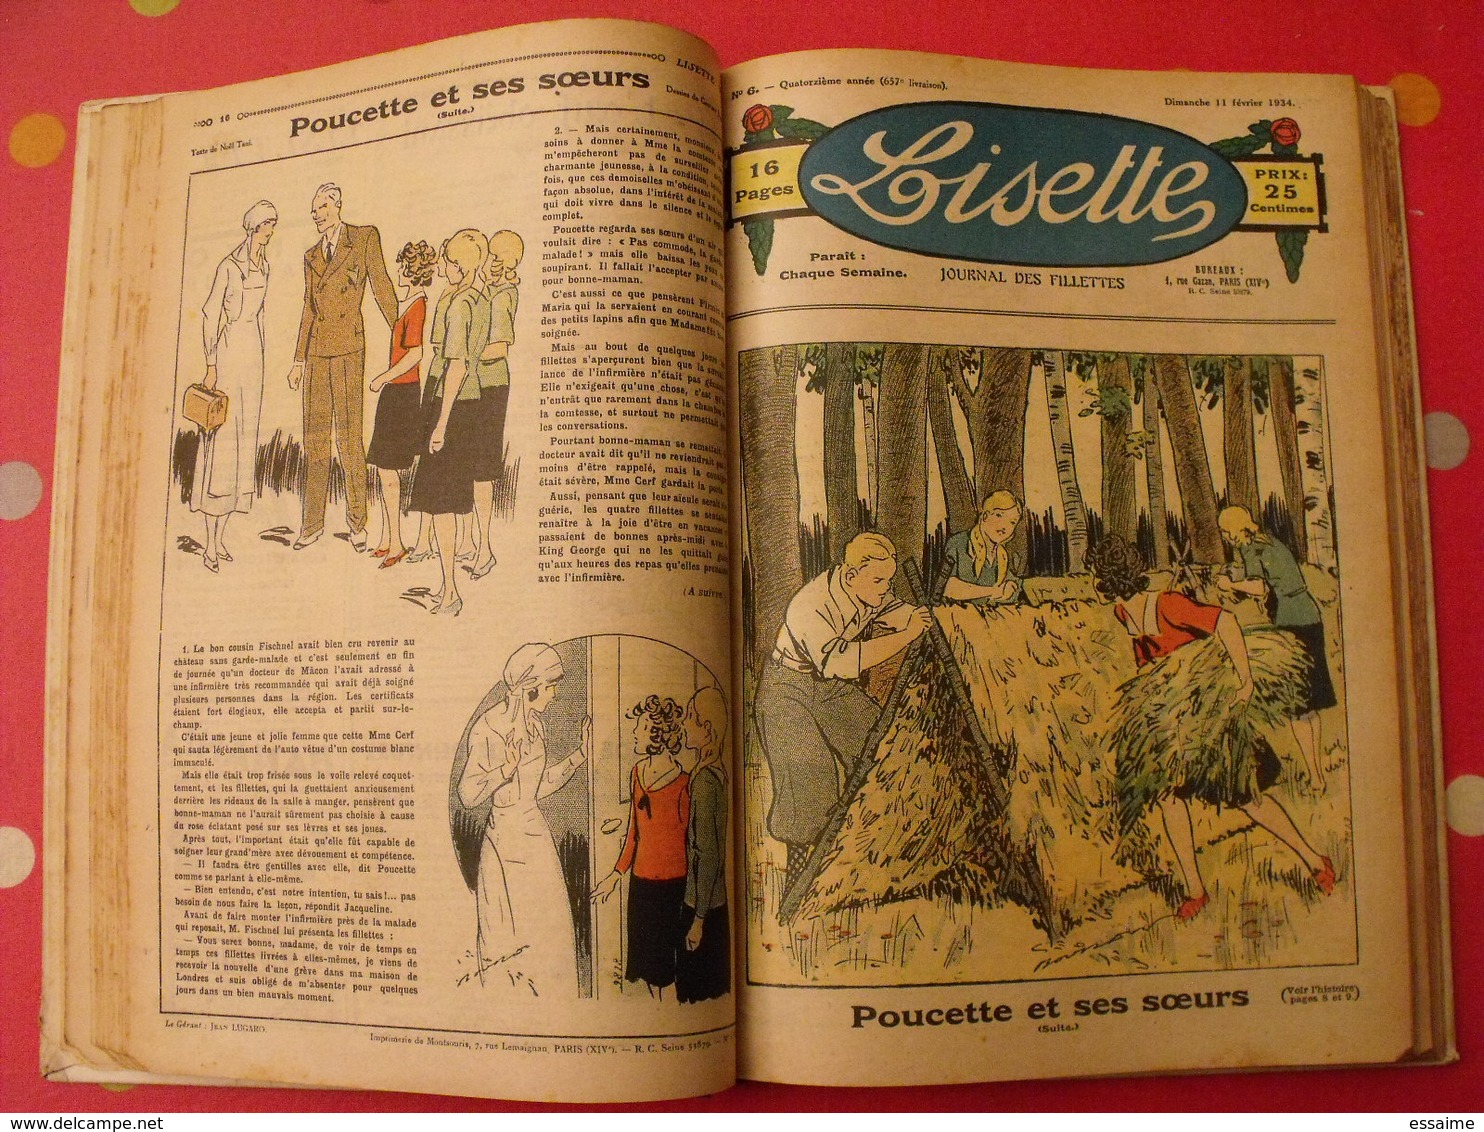 Lisette, album 14 XIV. 1934. recueil reliure. le rallic levesque maitrejean cuvillier bourdin dot petite annie mc clure